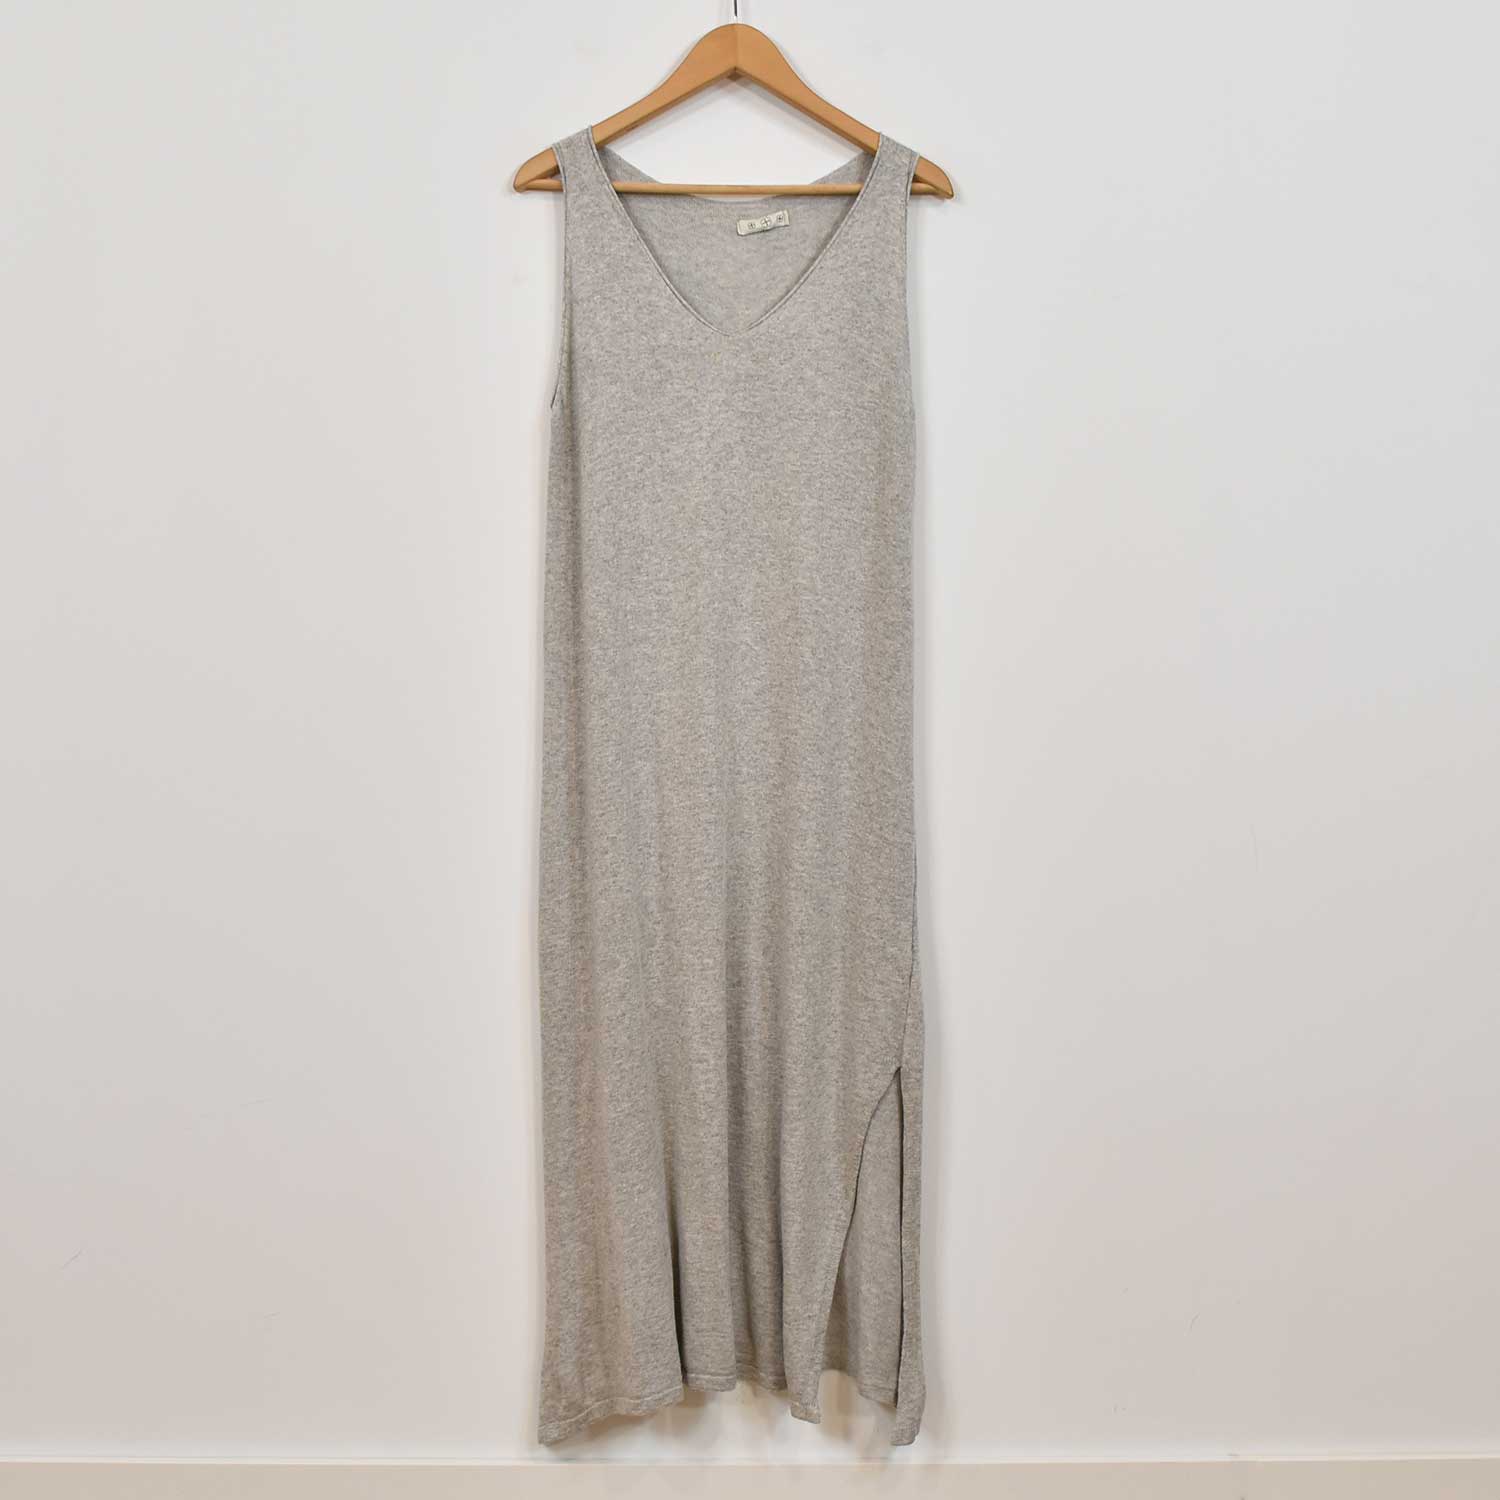 Grey knit dress